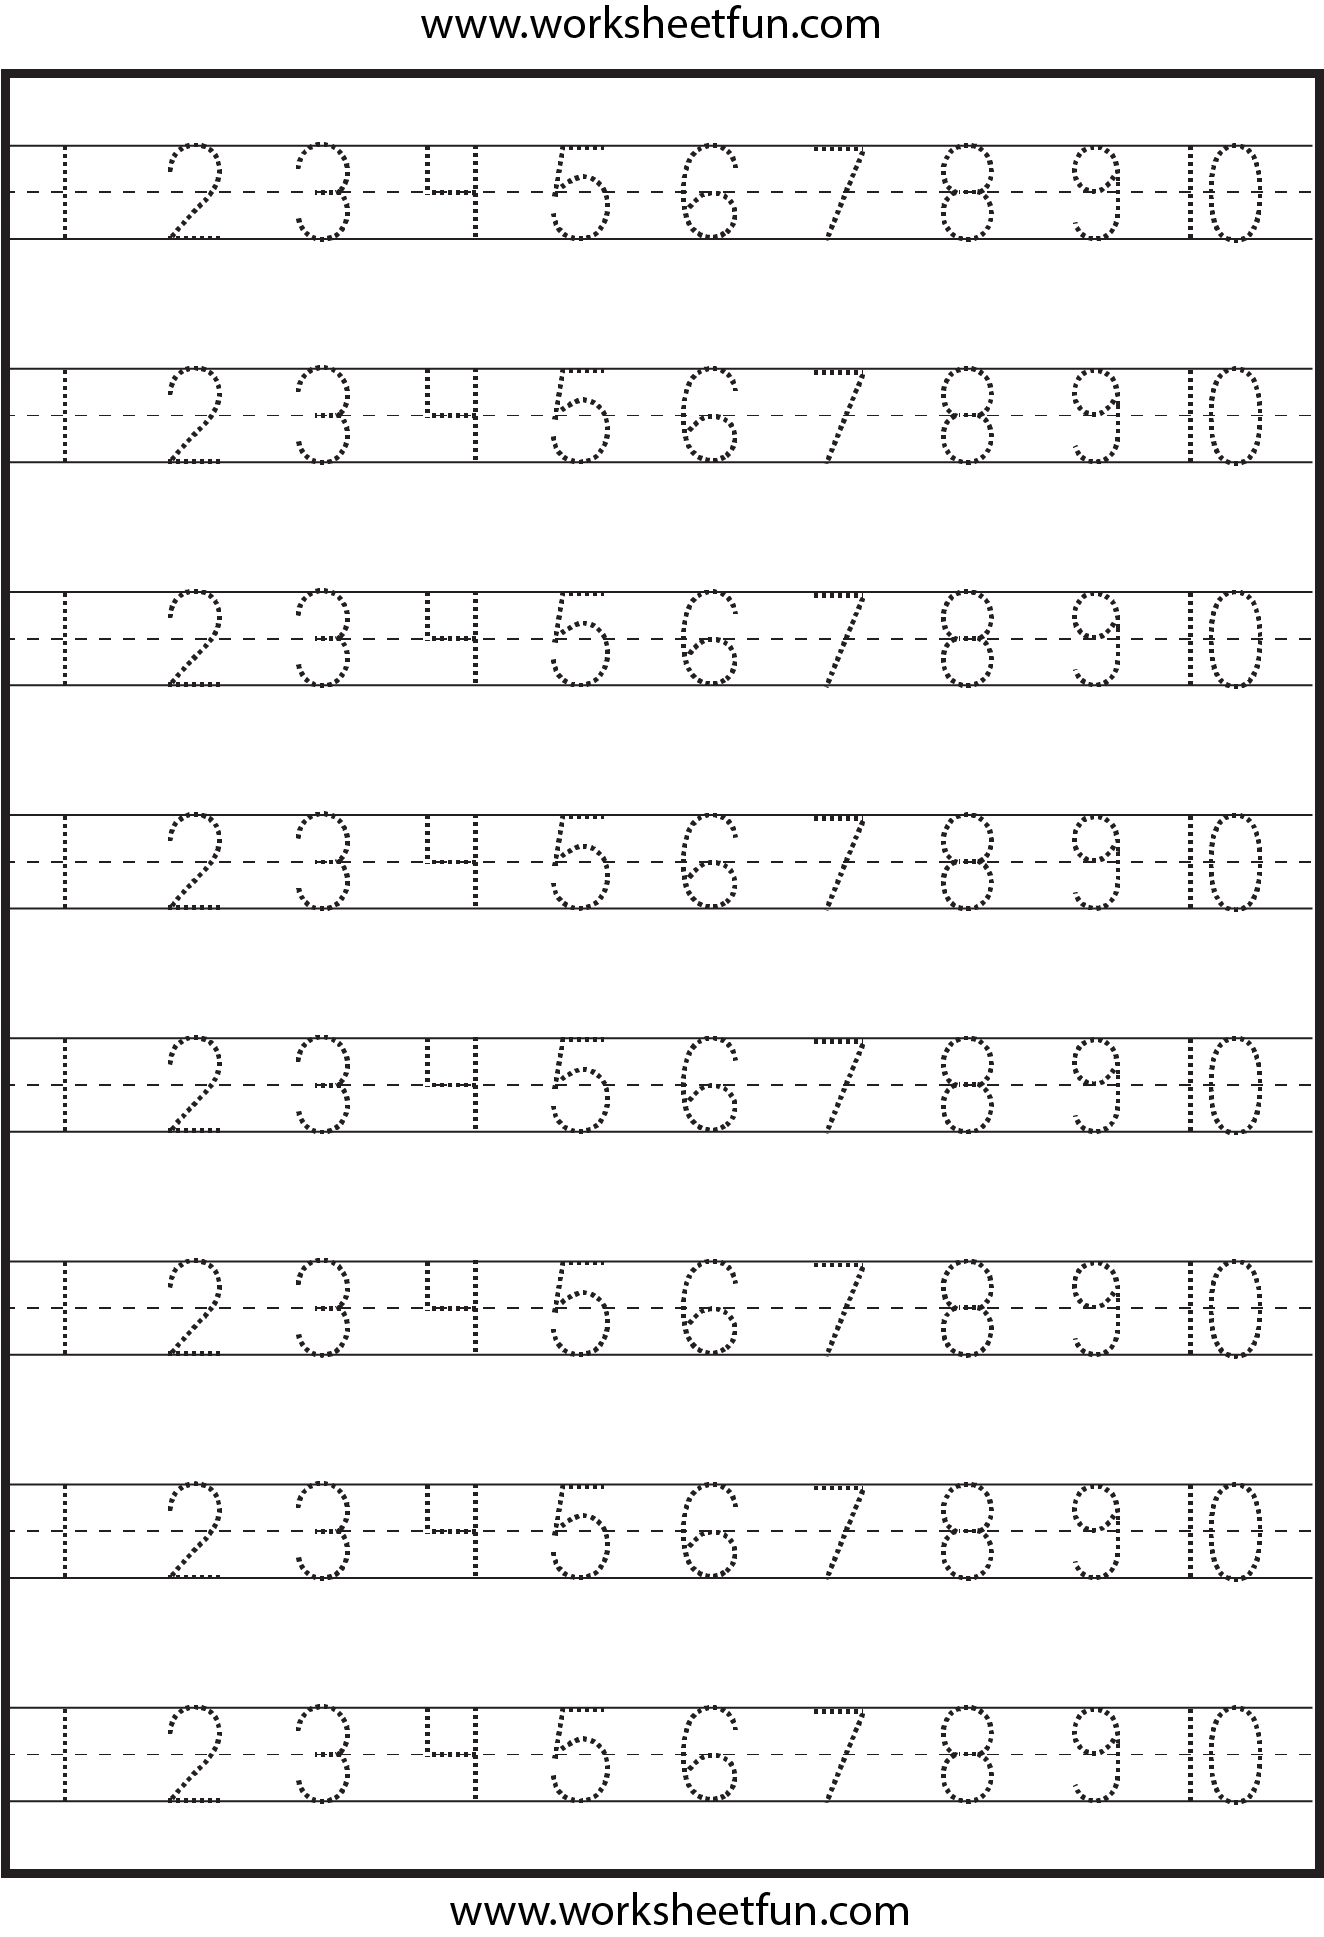 number-tracing-1-10-worksheet-free-printable-worksheets-worksheetfun